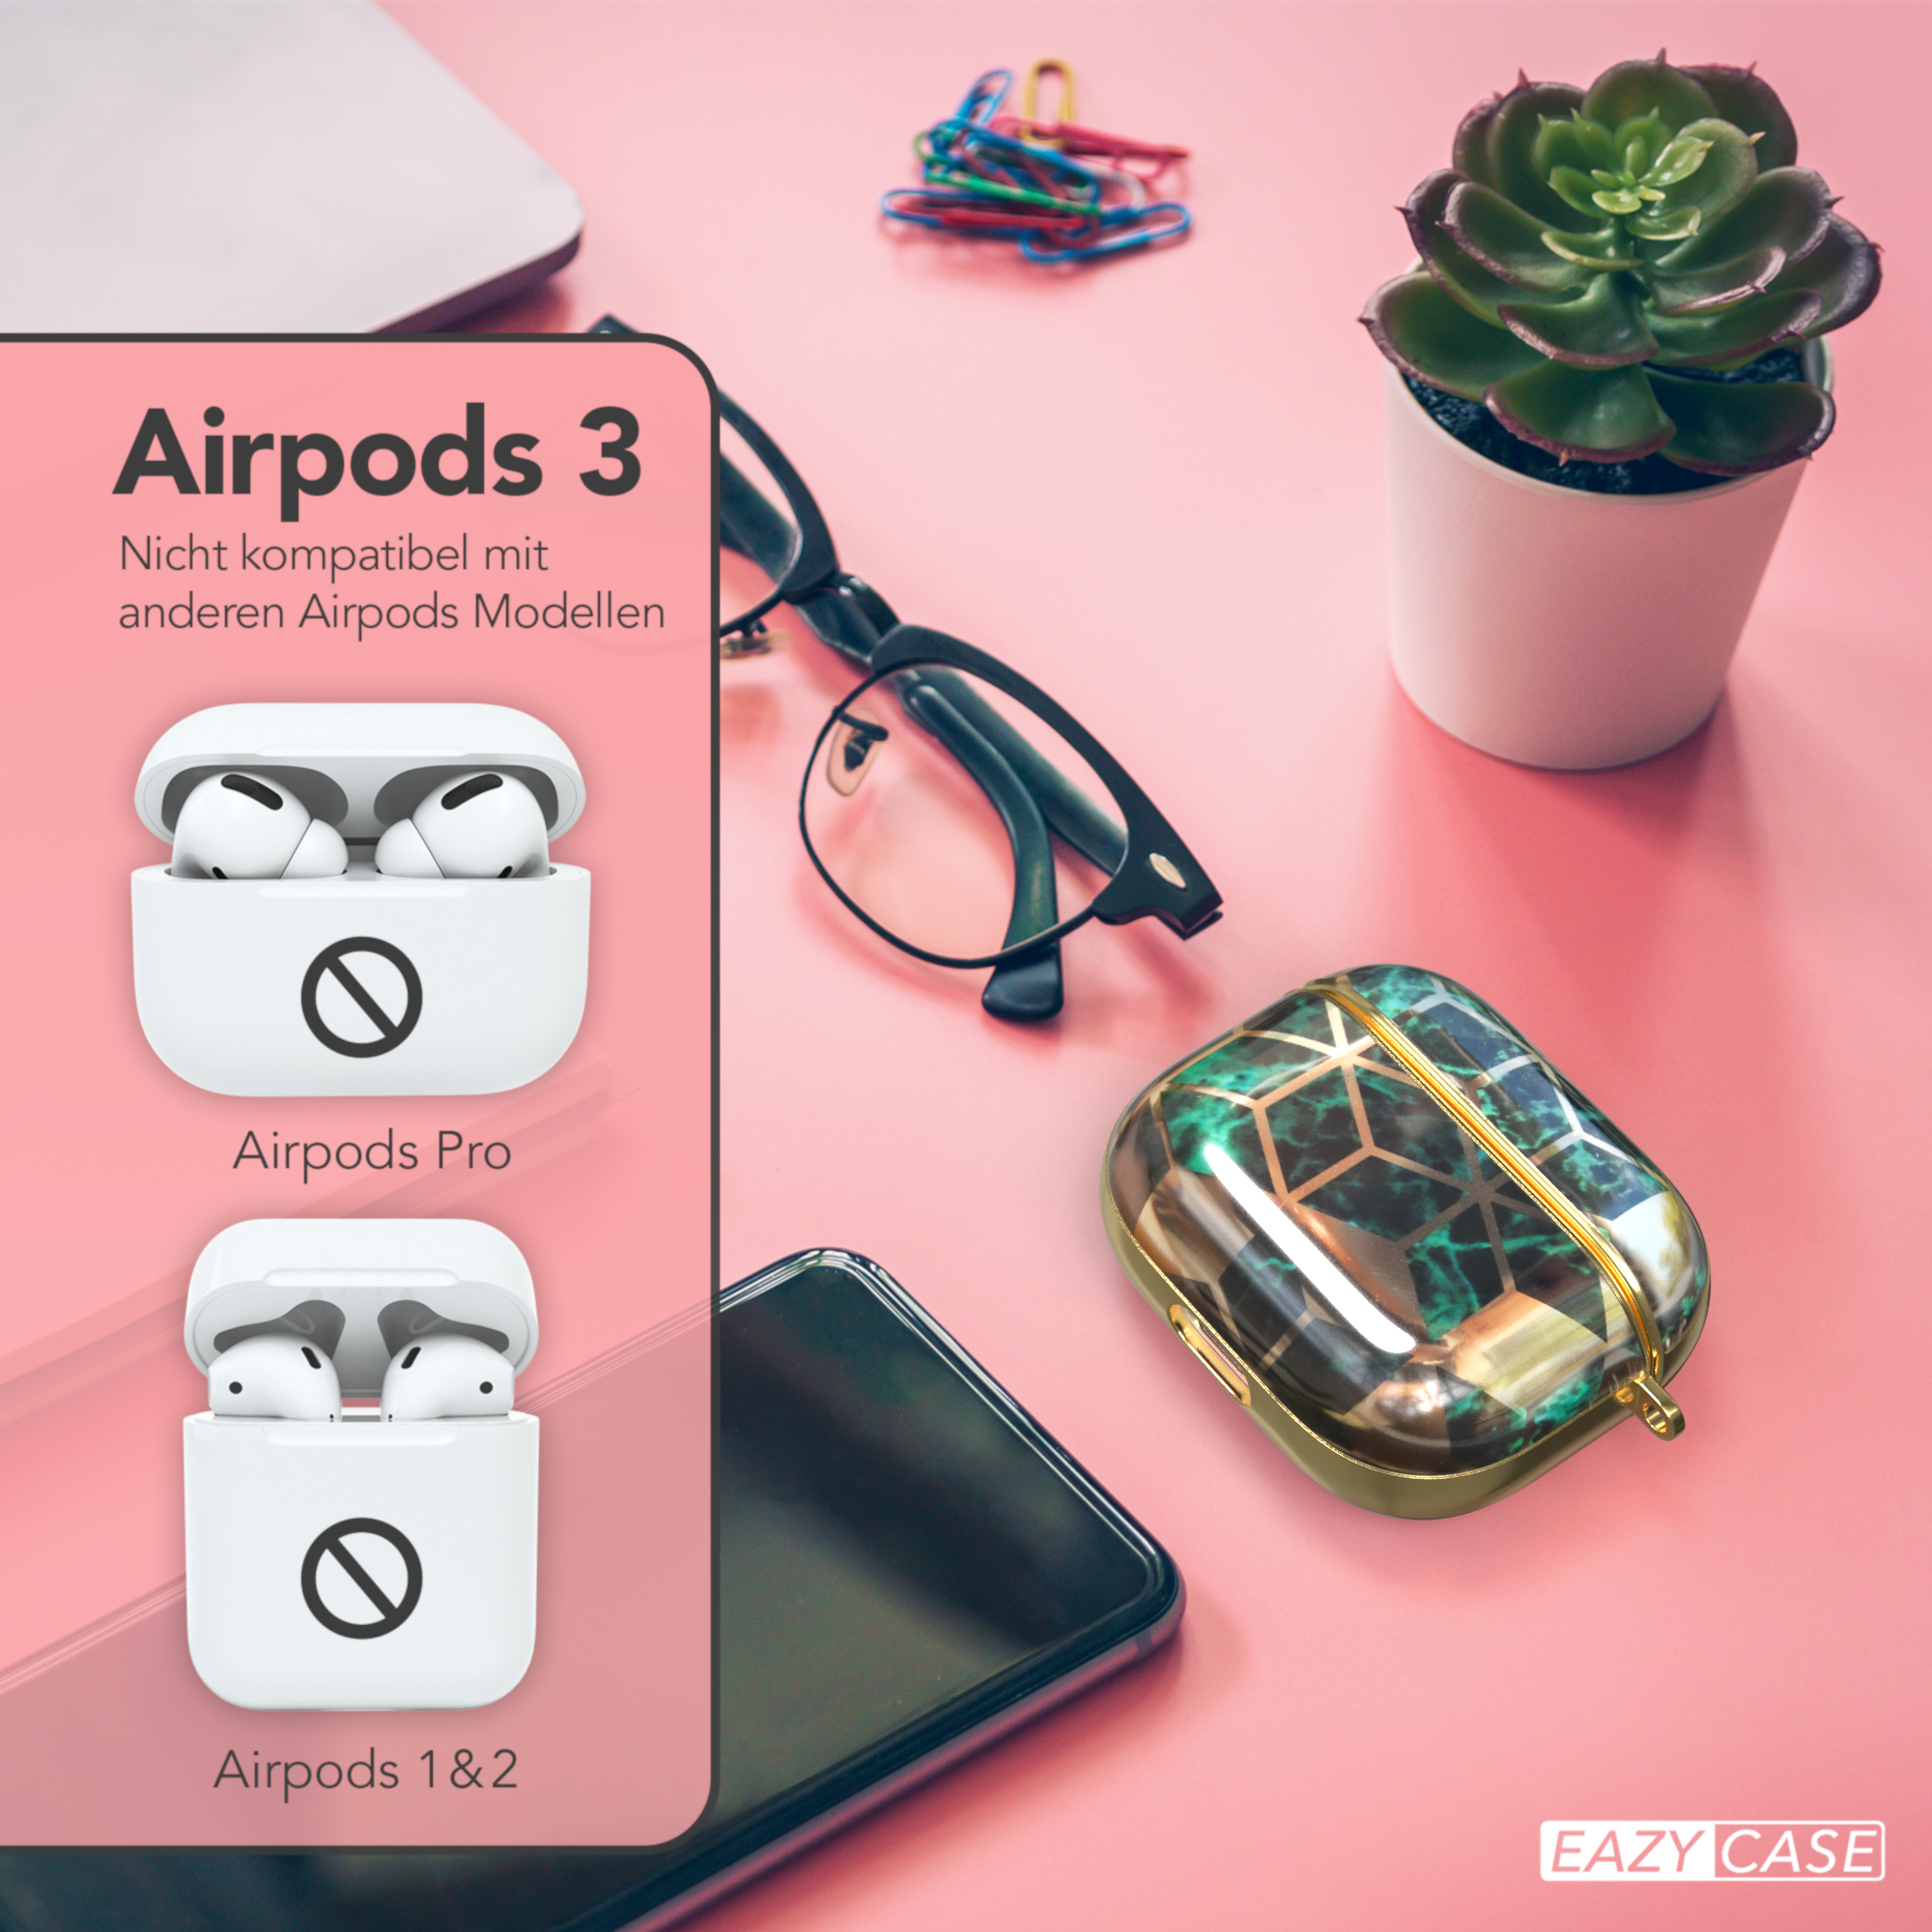 CASE Apple Gold EAZY 3 für: AirPods passend Case Schutzhülle Grün IMD Motiv / Sleeve